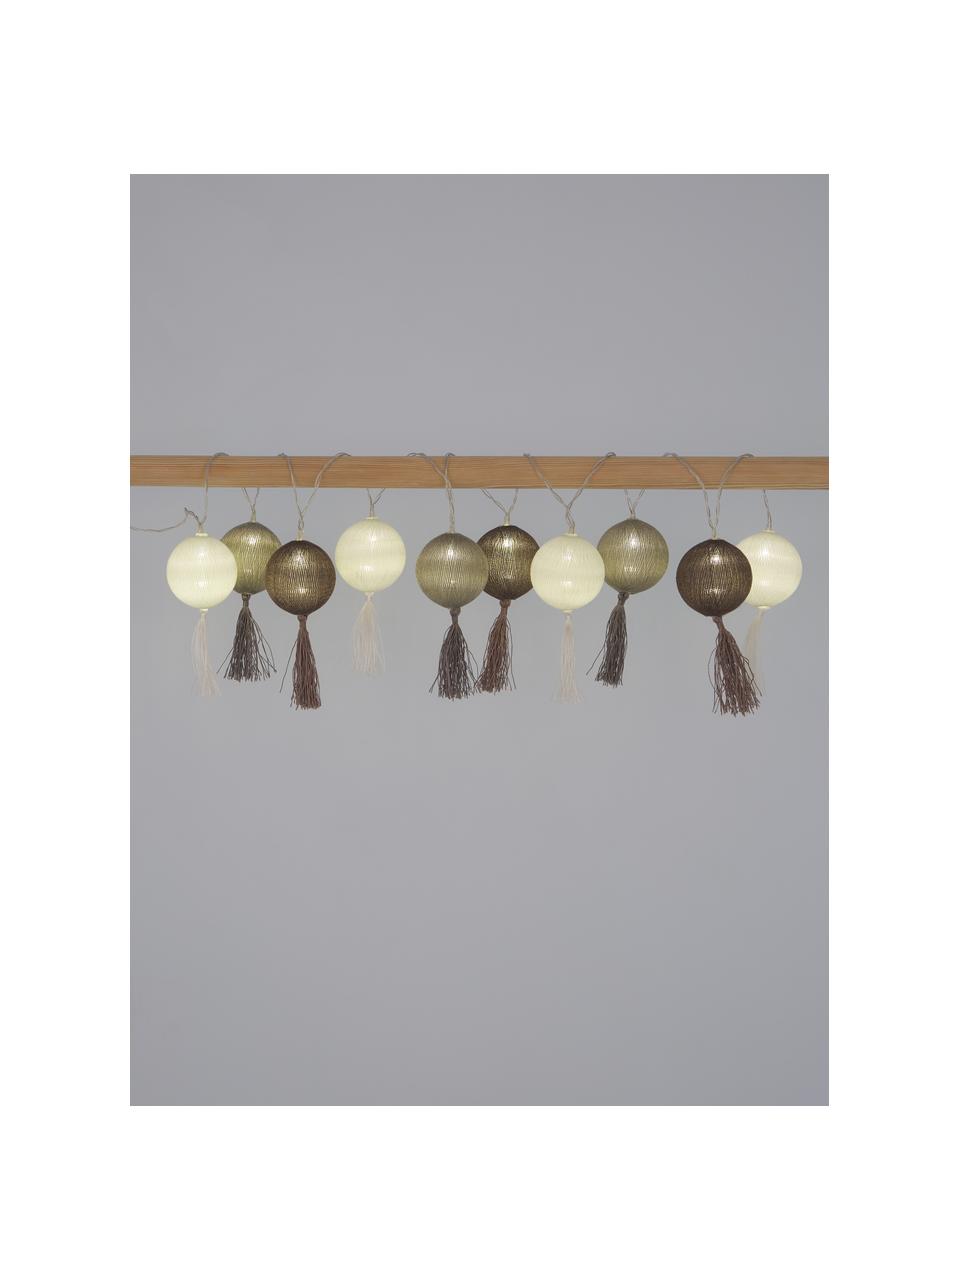 Girlanda świetlna LED Jolly Tassel, 185 cm i 10 lampionów, Brązowy, beżowy, D 185 cm